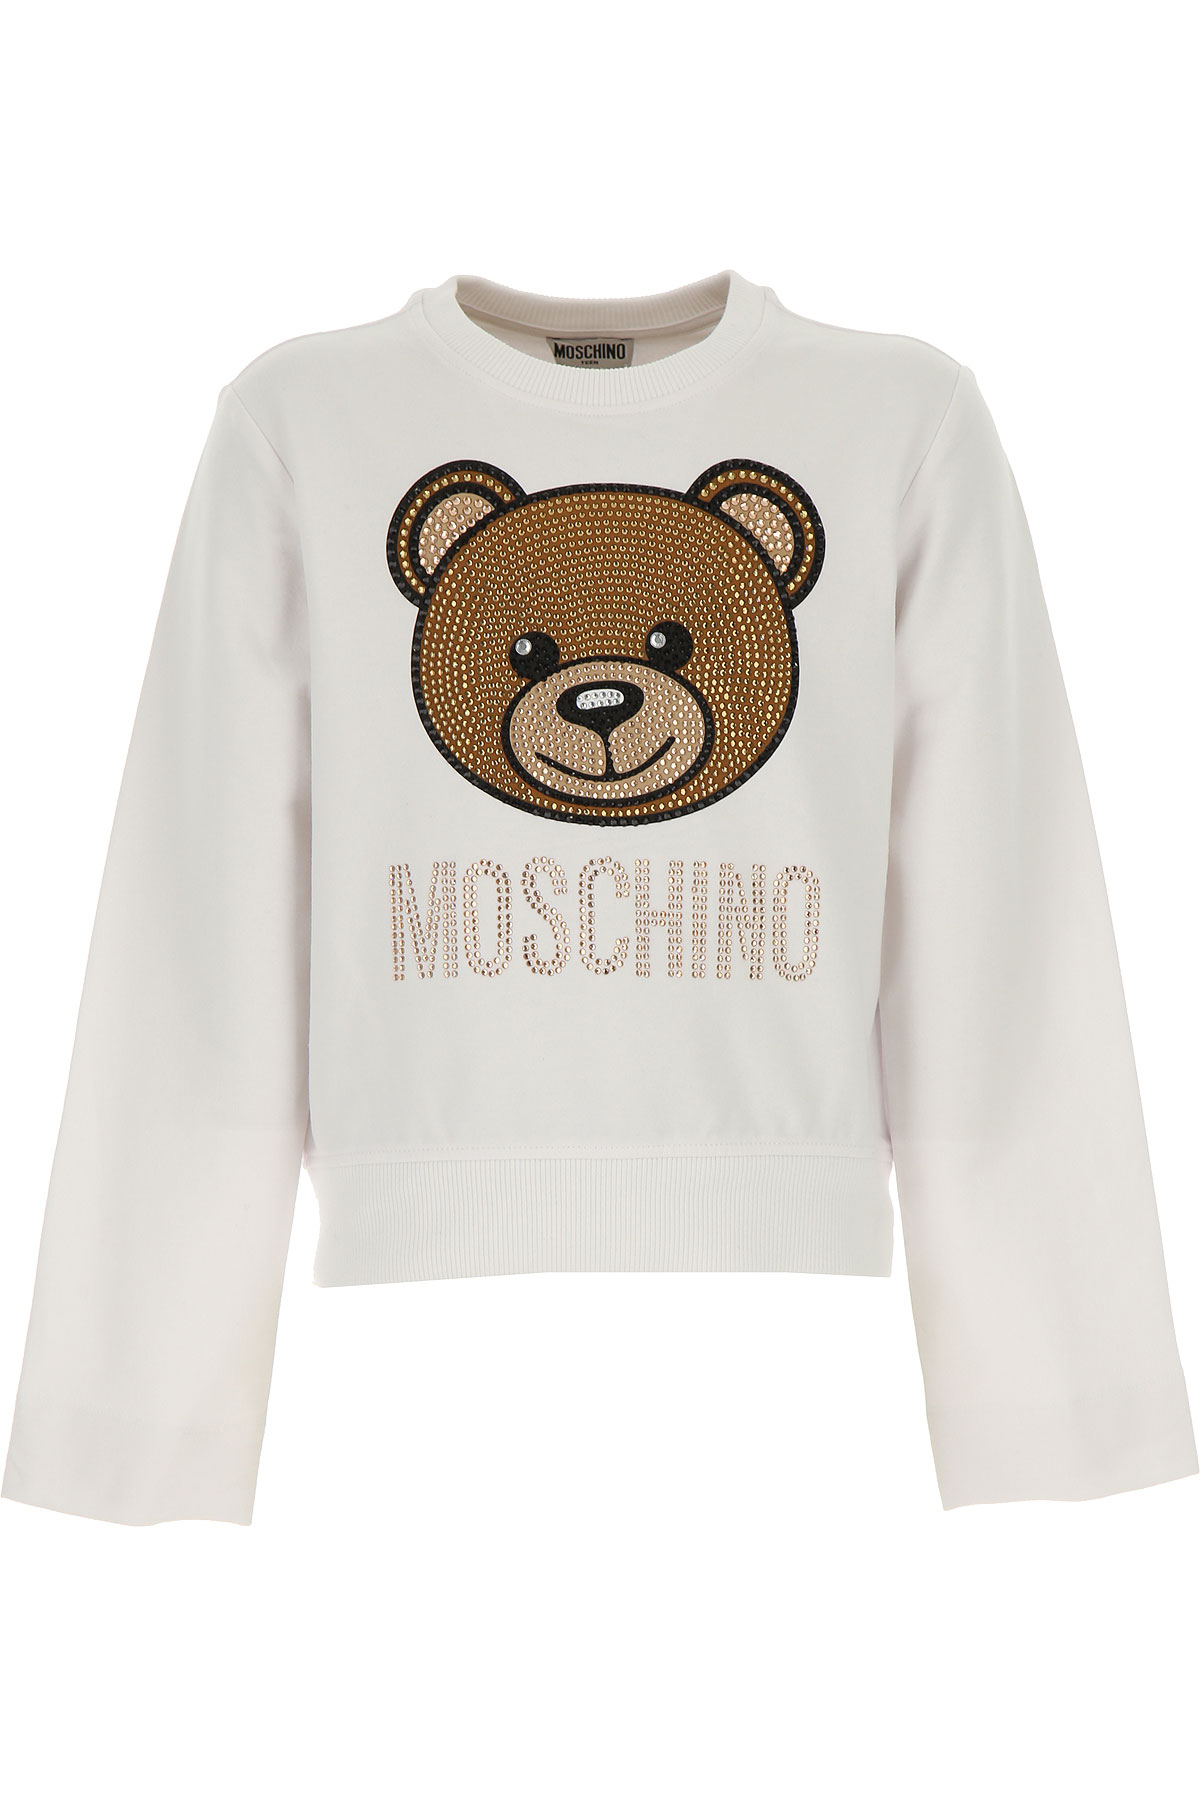 Moschino Kinder Sweatshirt & Kapuzenpullover für Mädchen Günstig im Sale, Weiss, Baumwolle, 2017, 10Y 12Y 14Y 4Y 6Y 8Y